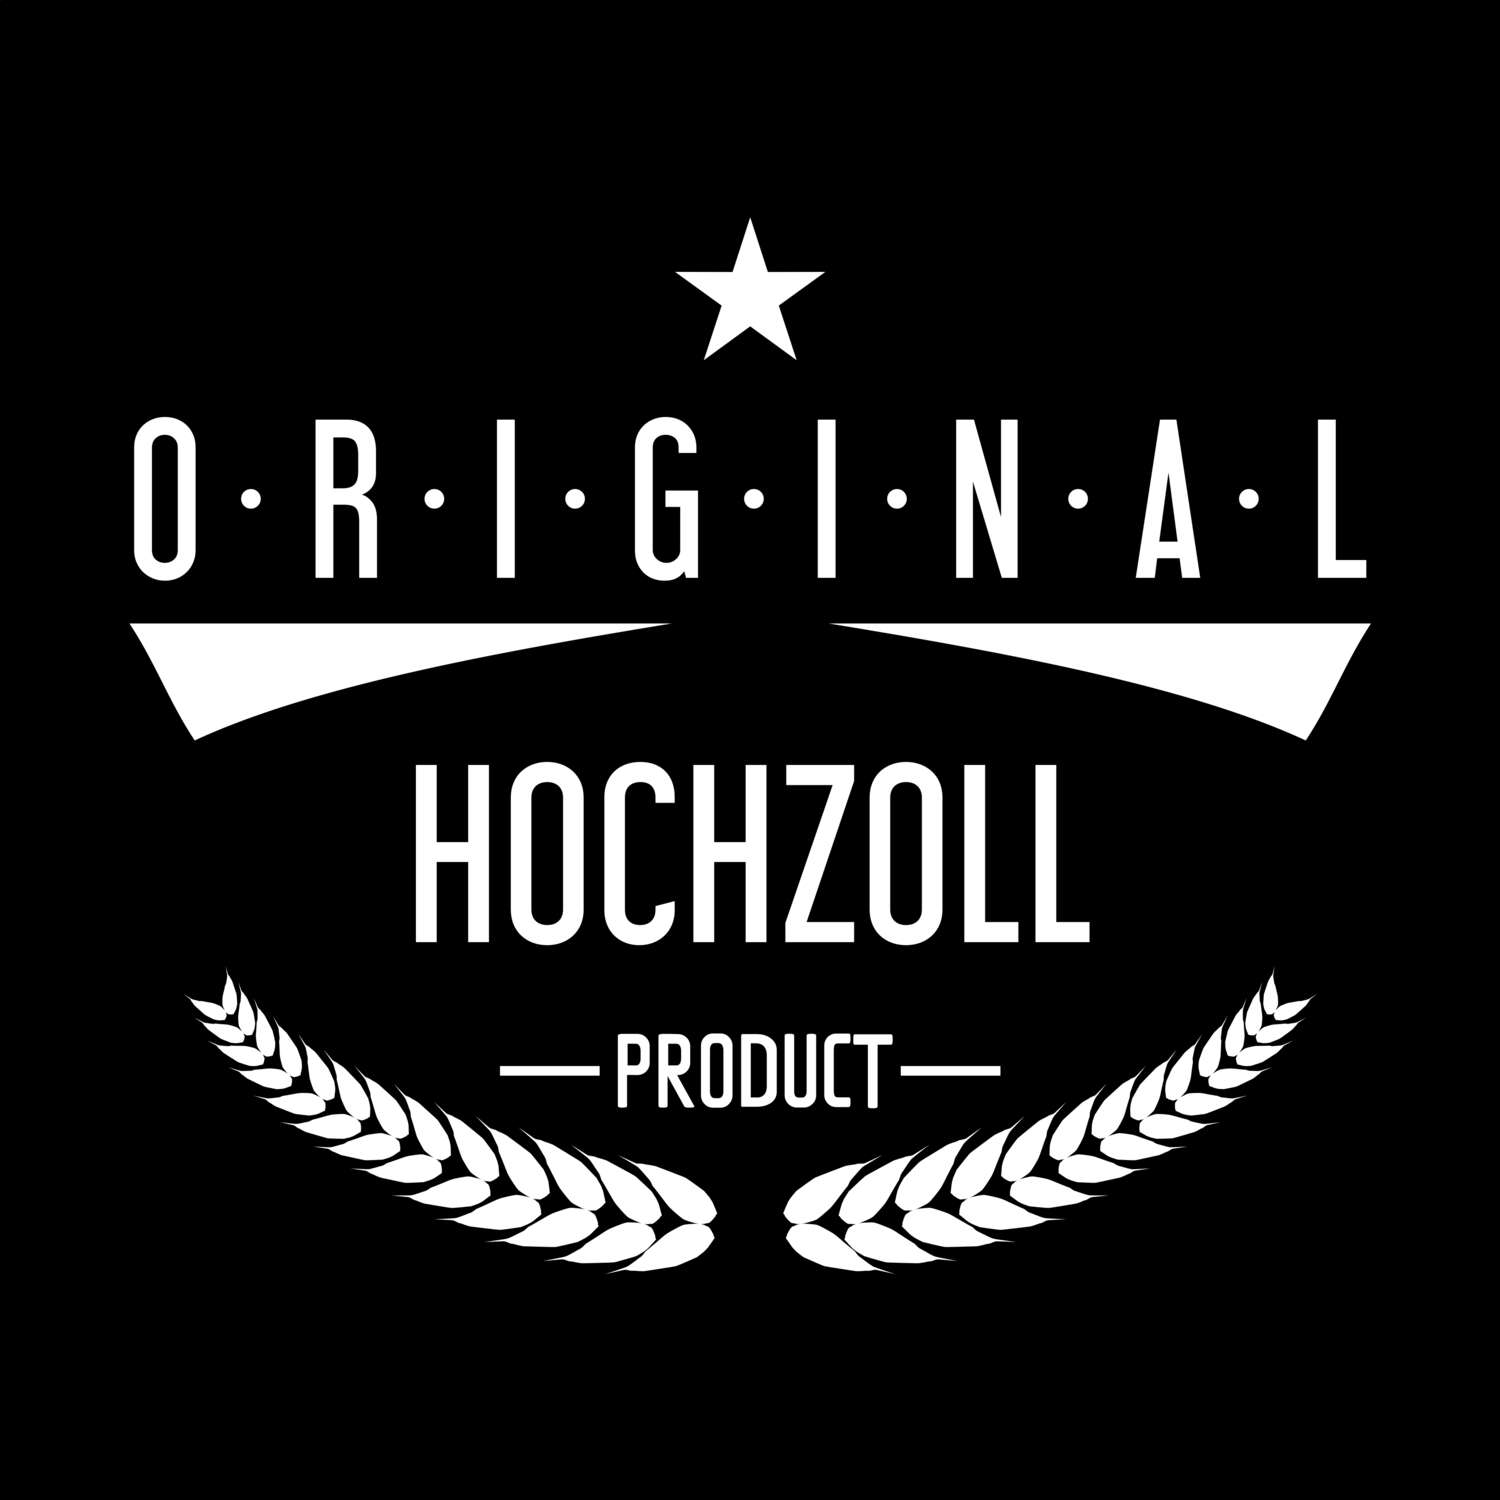 Hochzoll T-Shirt »Original Product«